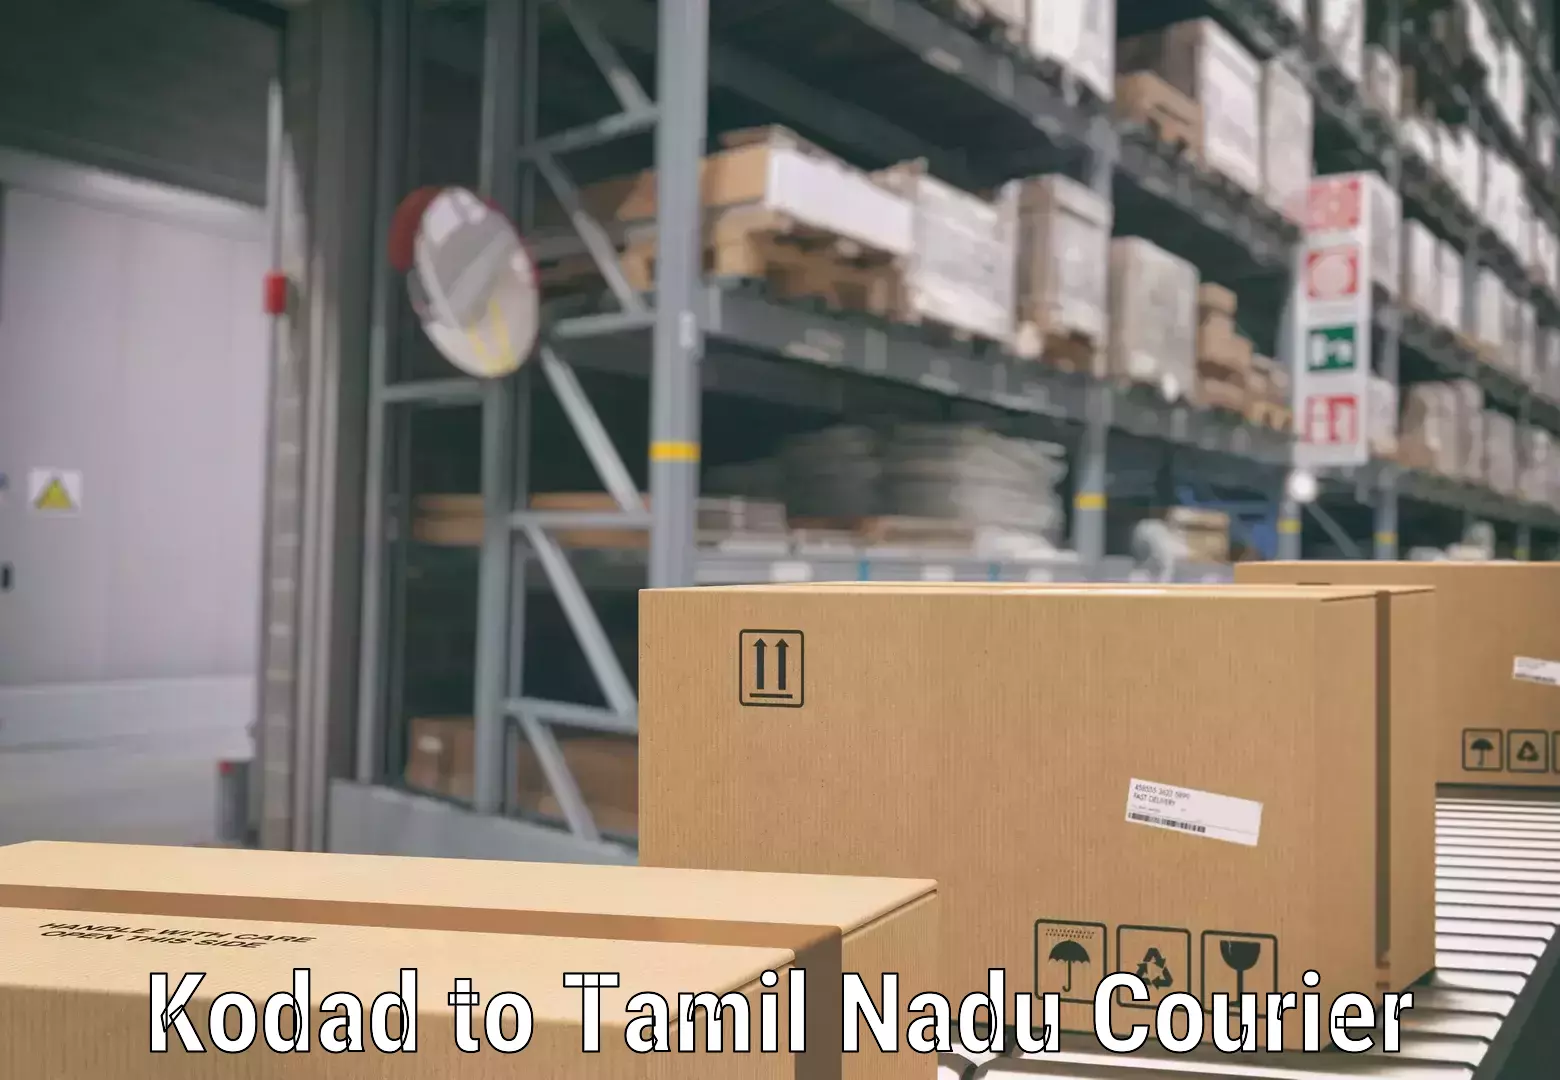 Luggage shipment specialists Kodad to Tamil Nadu